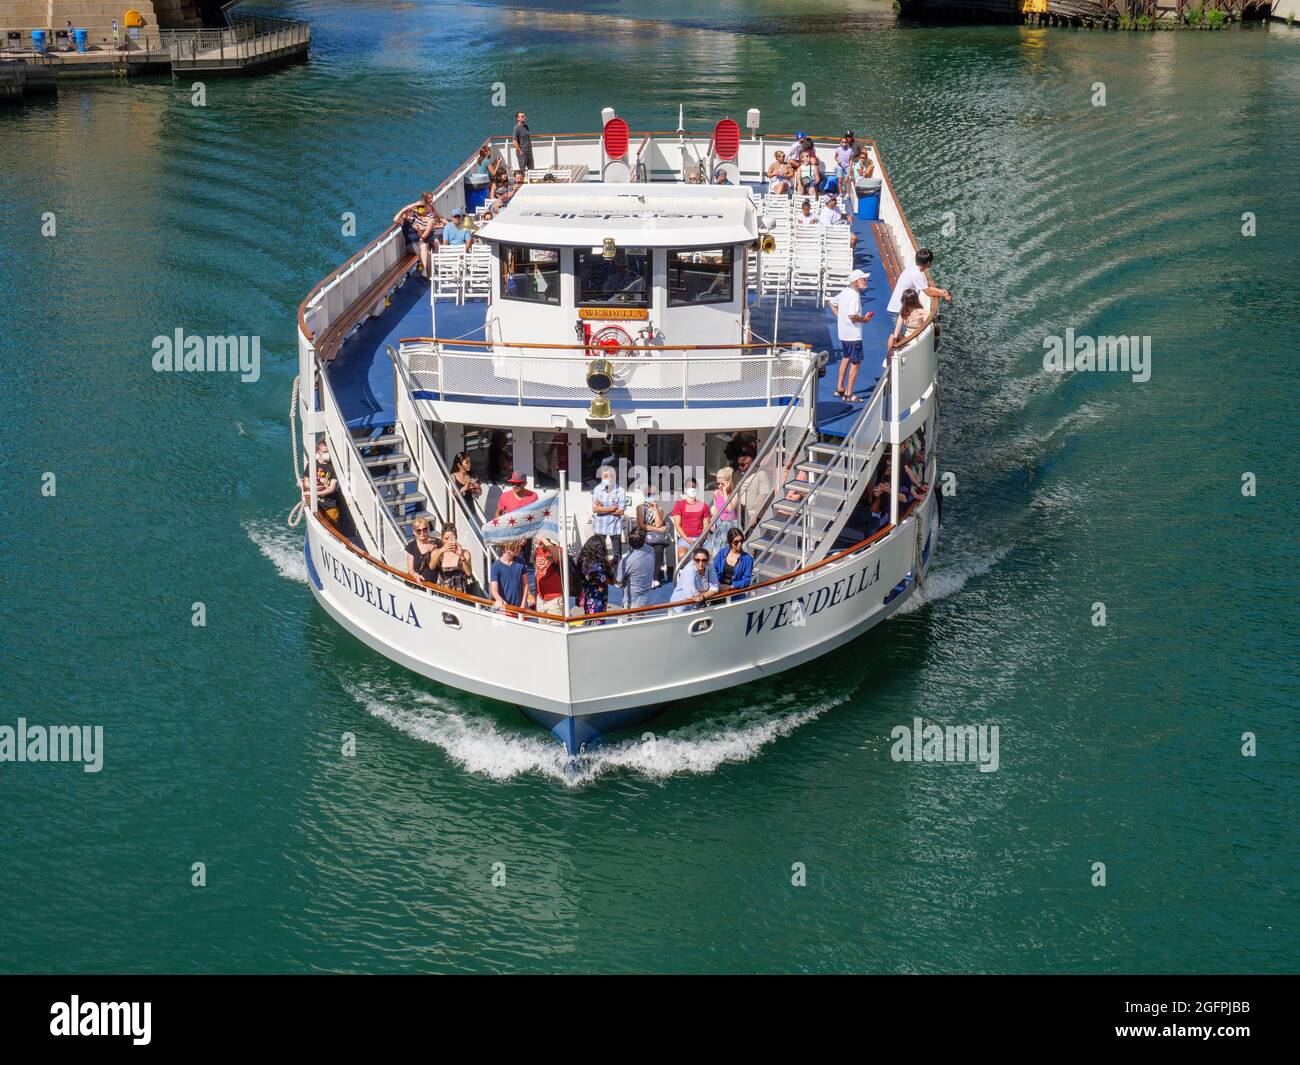 Wendella Tour Boot. Chicago River. Stockfoto